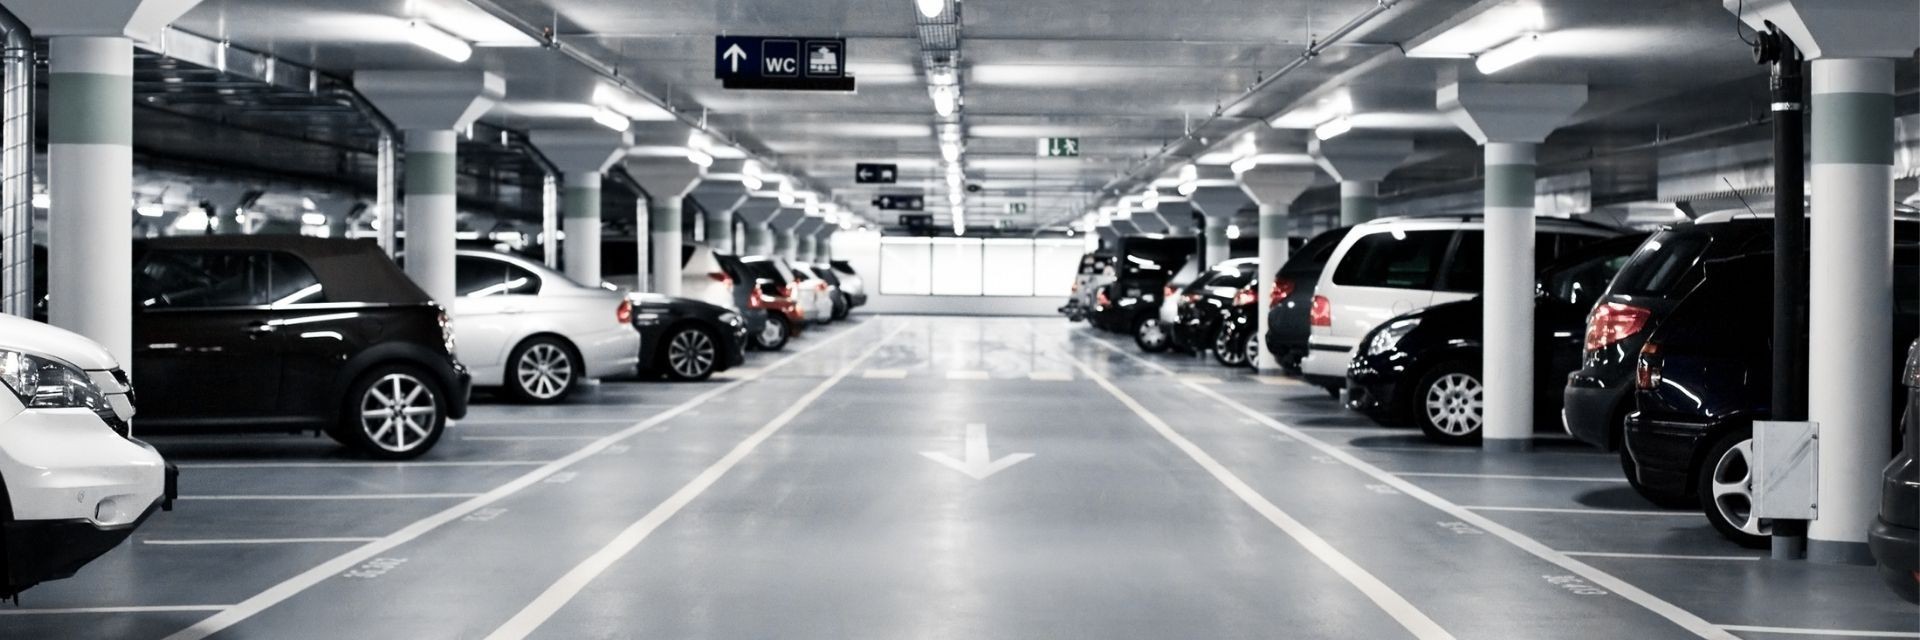 Well-lit parking garage